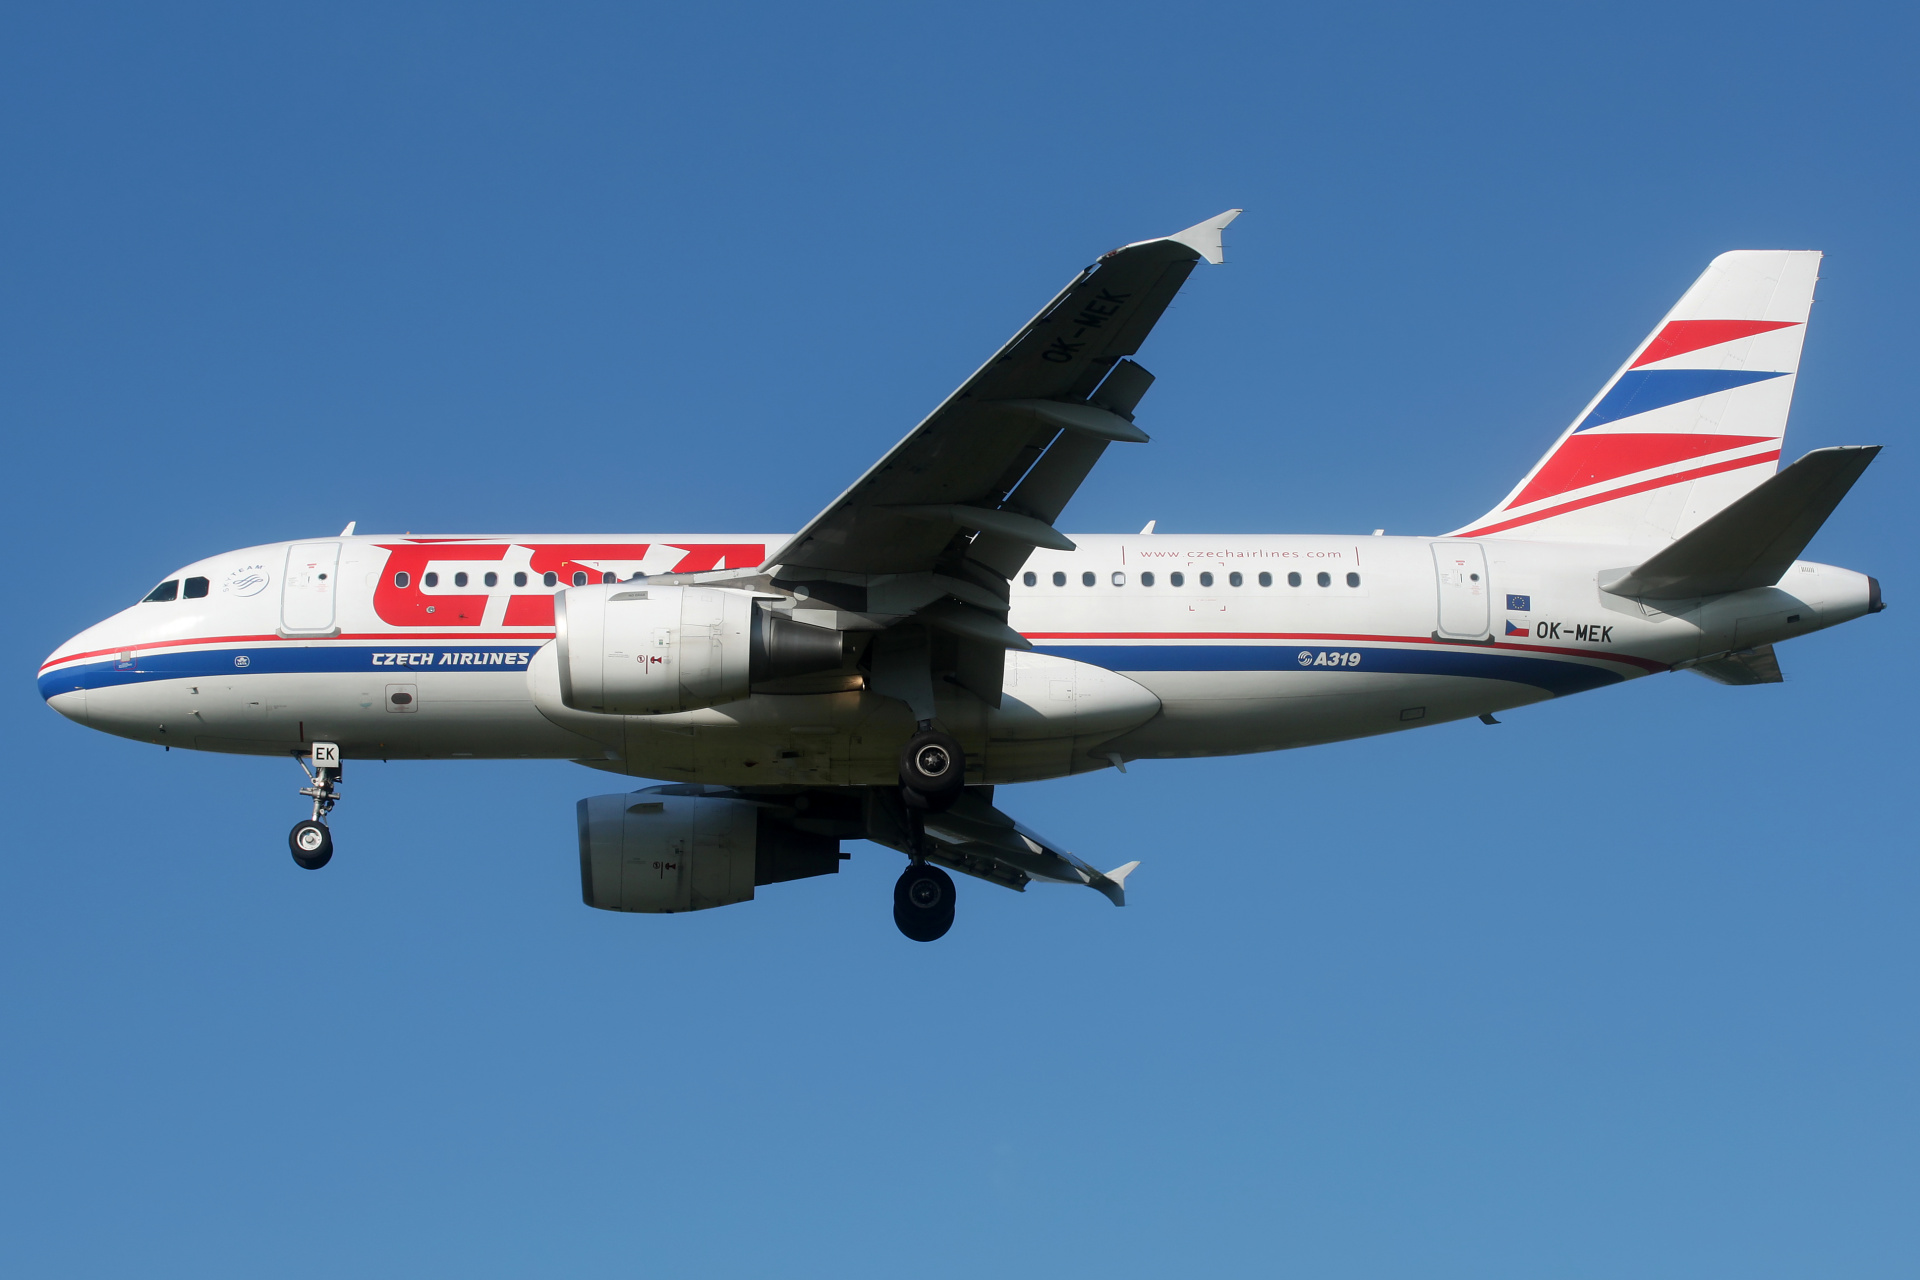 OK-MEK, CSA Czech Airlines (Aircraft » EPWA Spotting » Airbus A319-100 » CSA Czech Airlines)